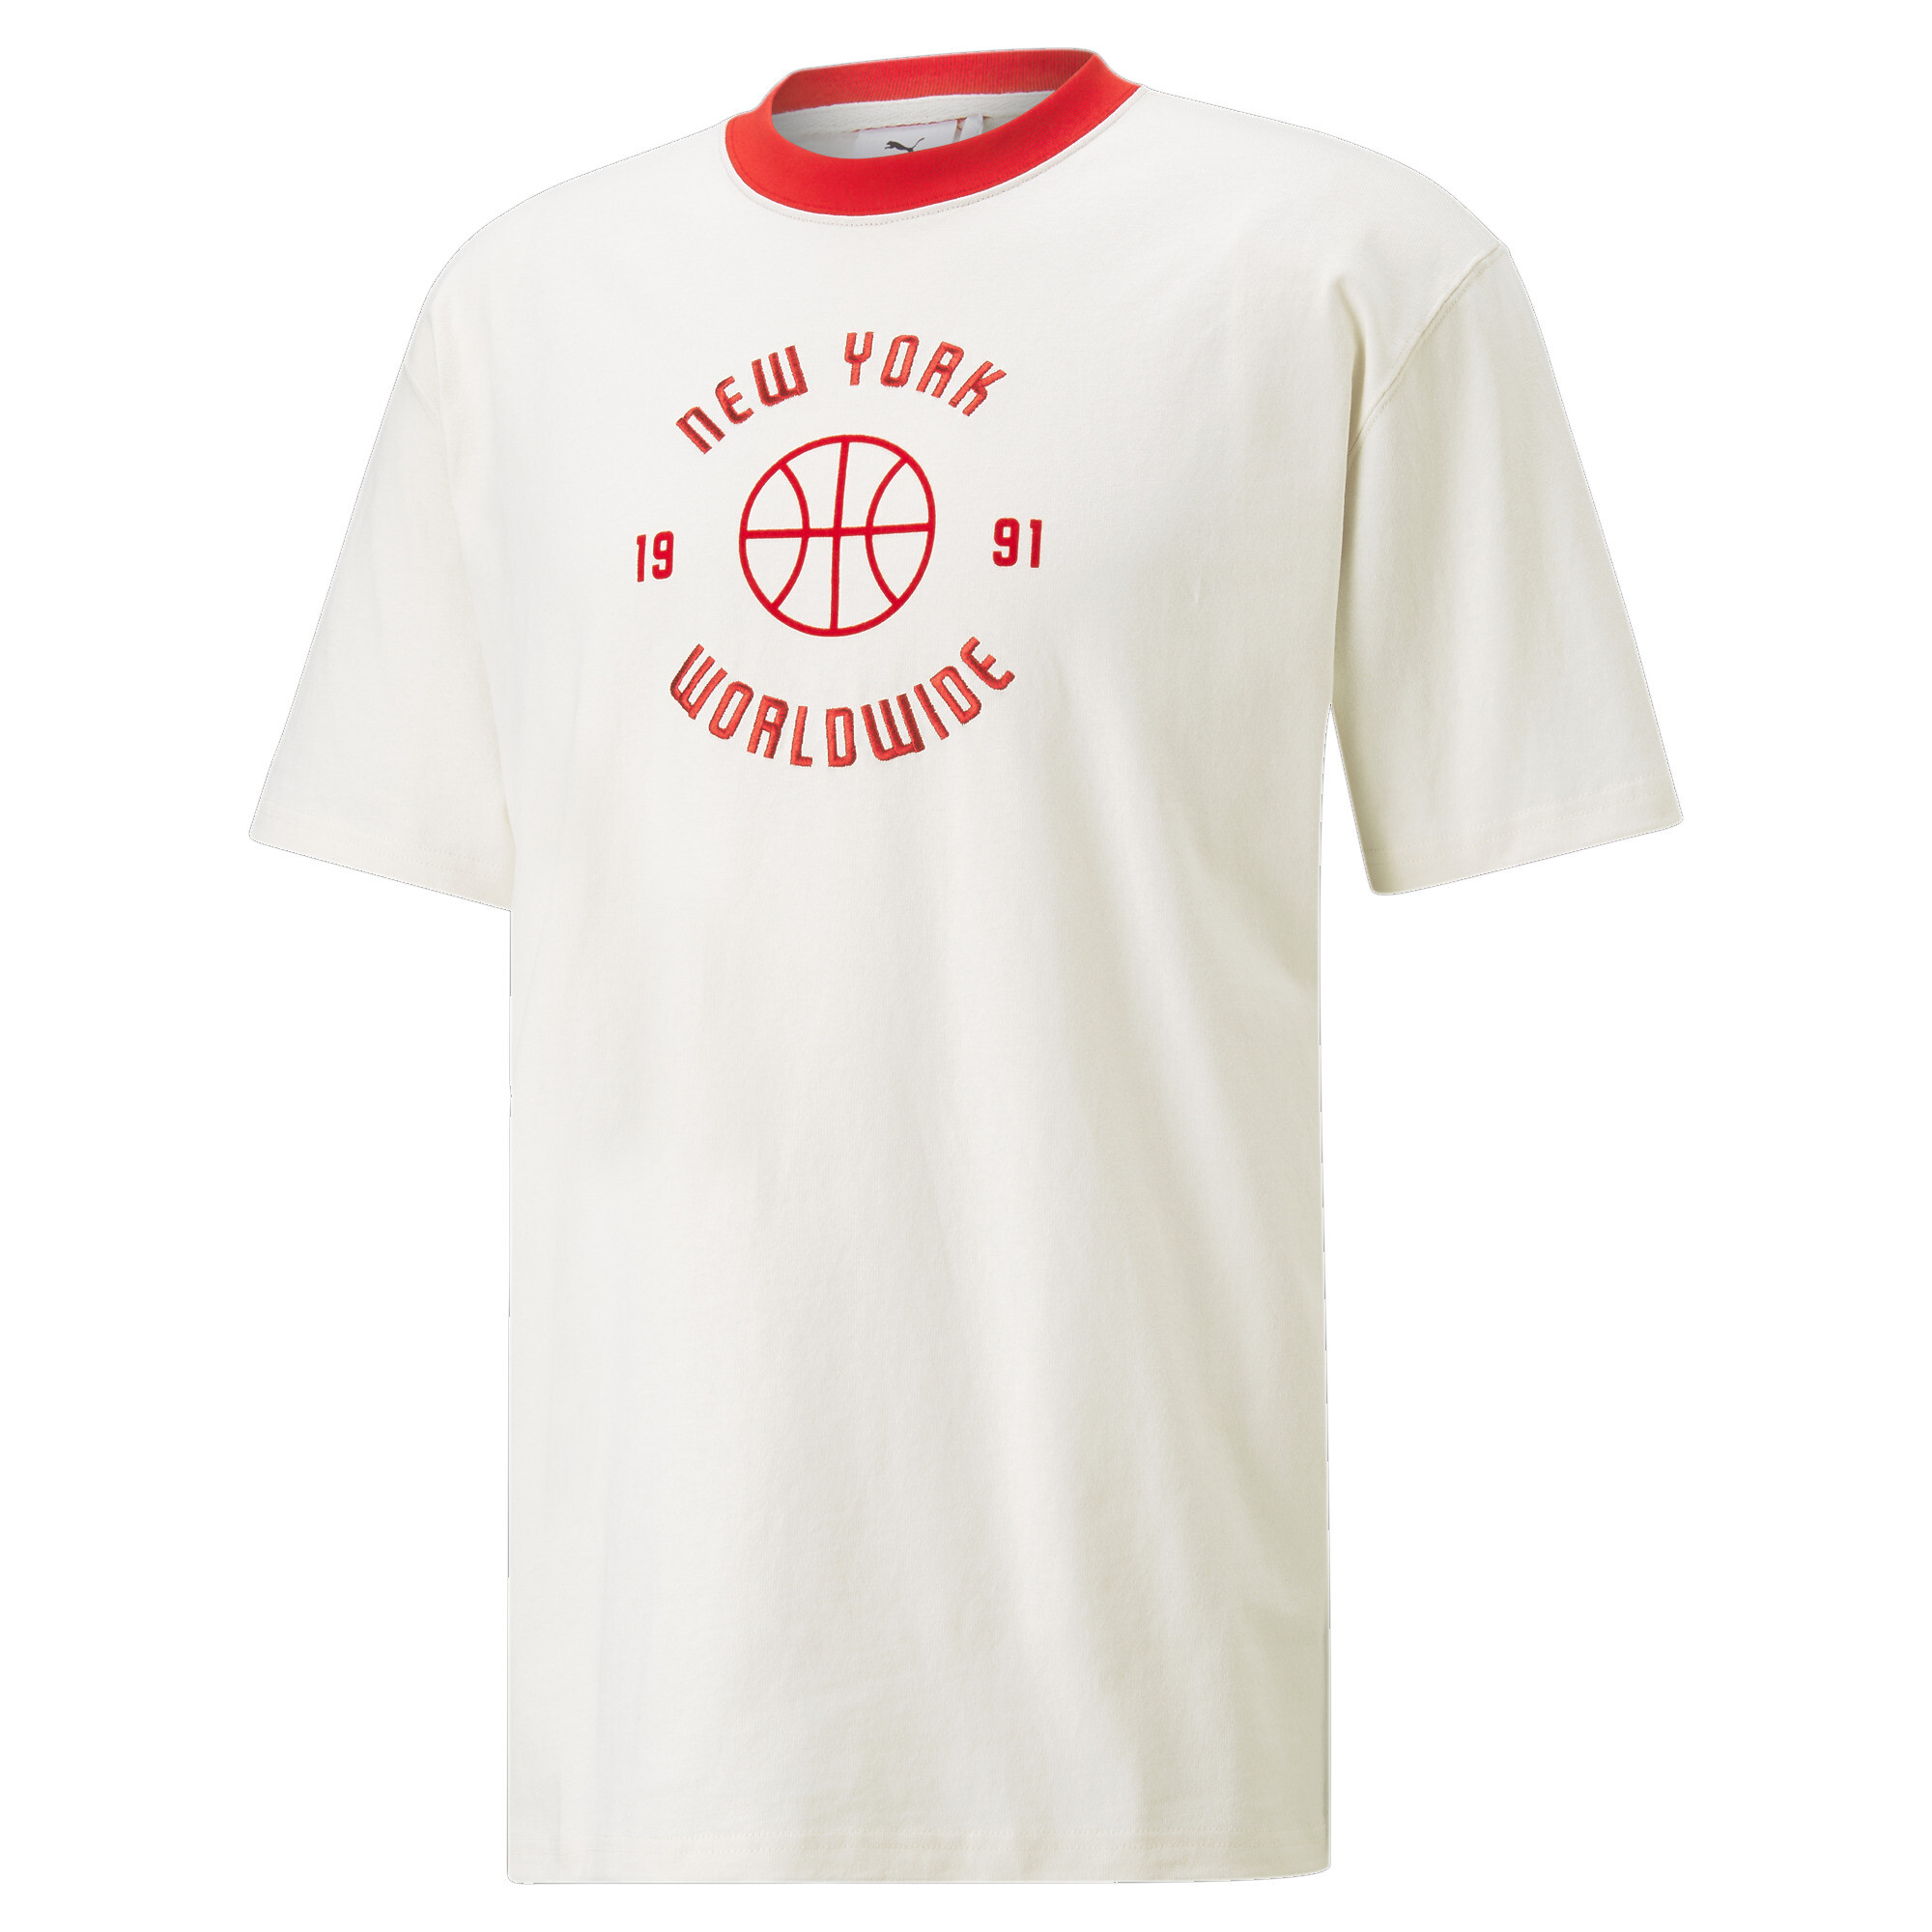 ＜プーマ公式通販＞ プーマ メンズ ACTIVE ビッグ ロゴ 半袖 Tシャツ メンズ High Risk Red ｜PUMA.com